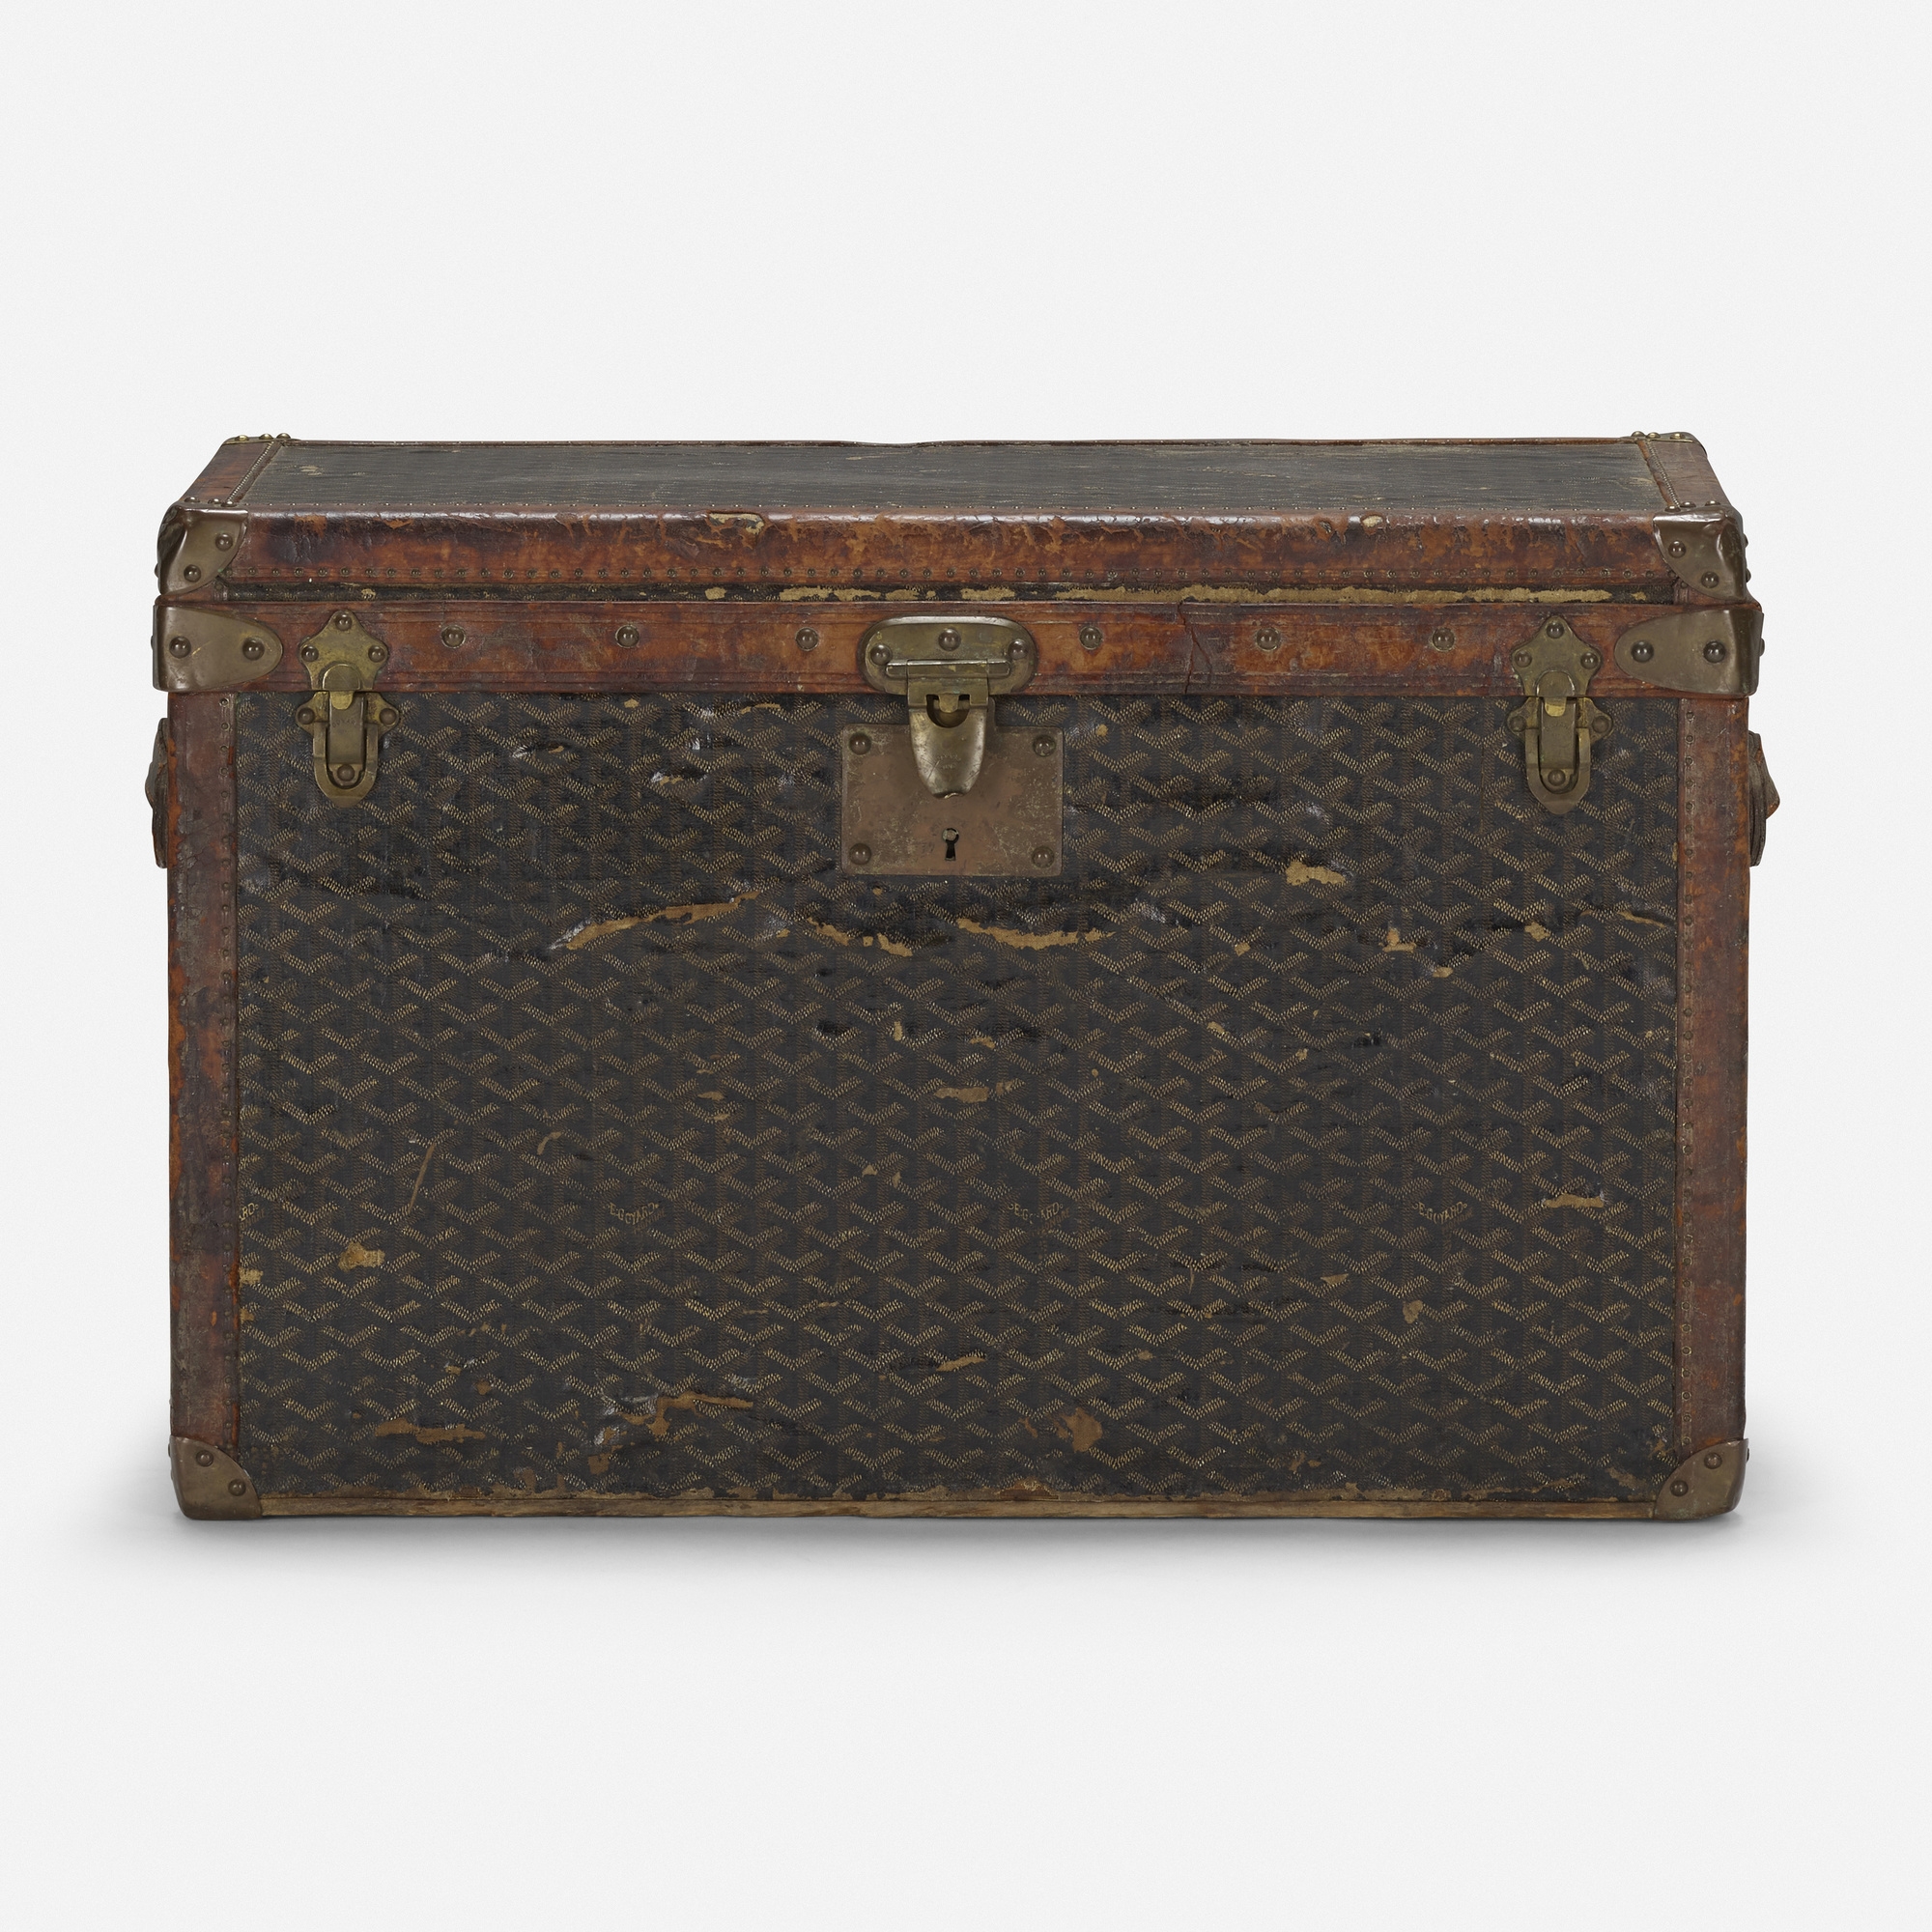 Sold at Auction: Malles Goyard Paris Steamer Suitcase, 1920s